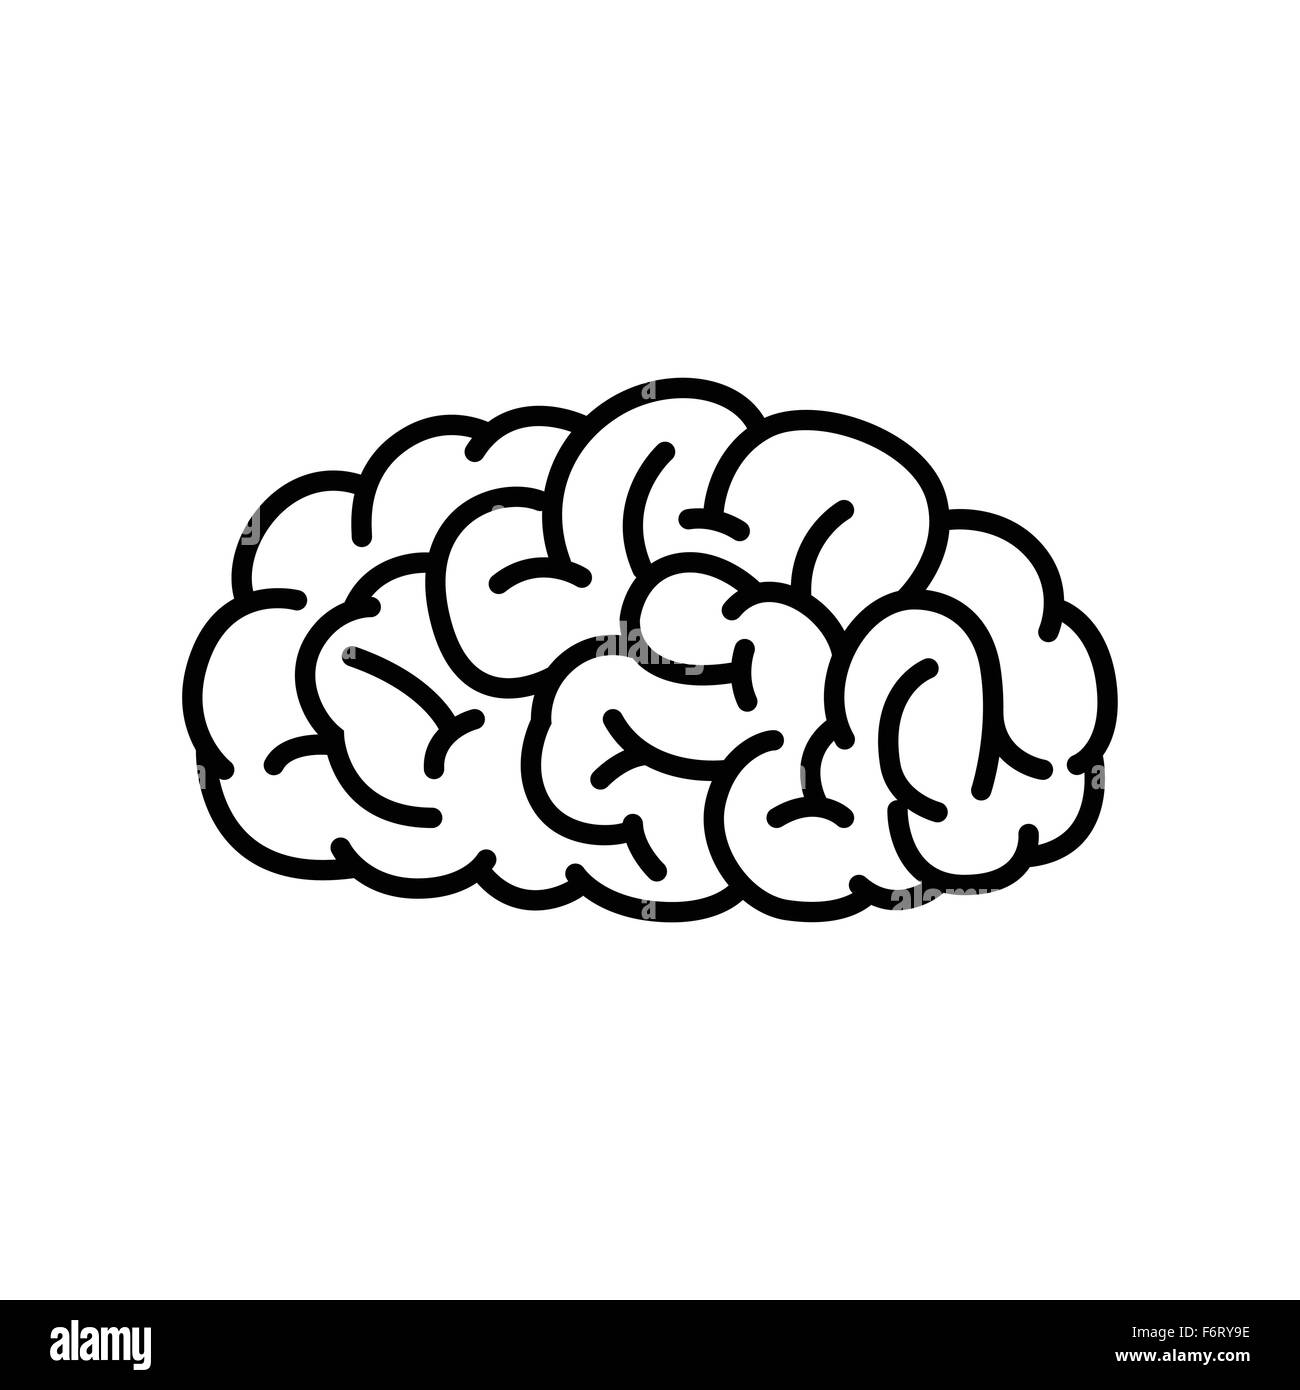 Vektor-Illustration des menschlichen Gehirns in schwarz und weiß Farbe. Stock Vektor